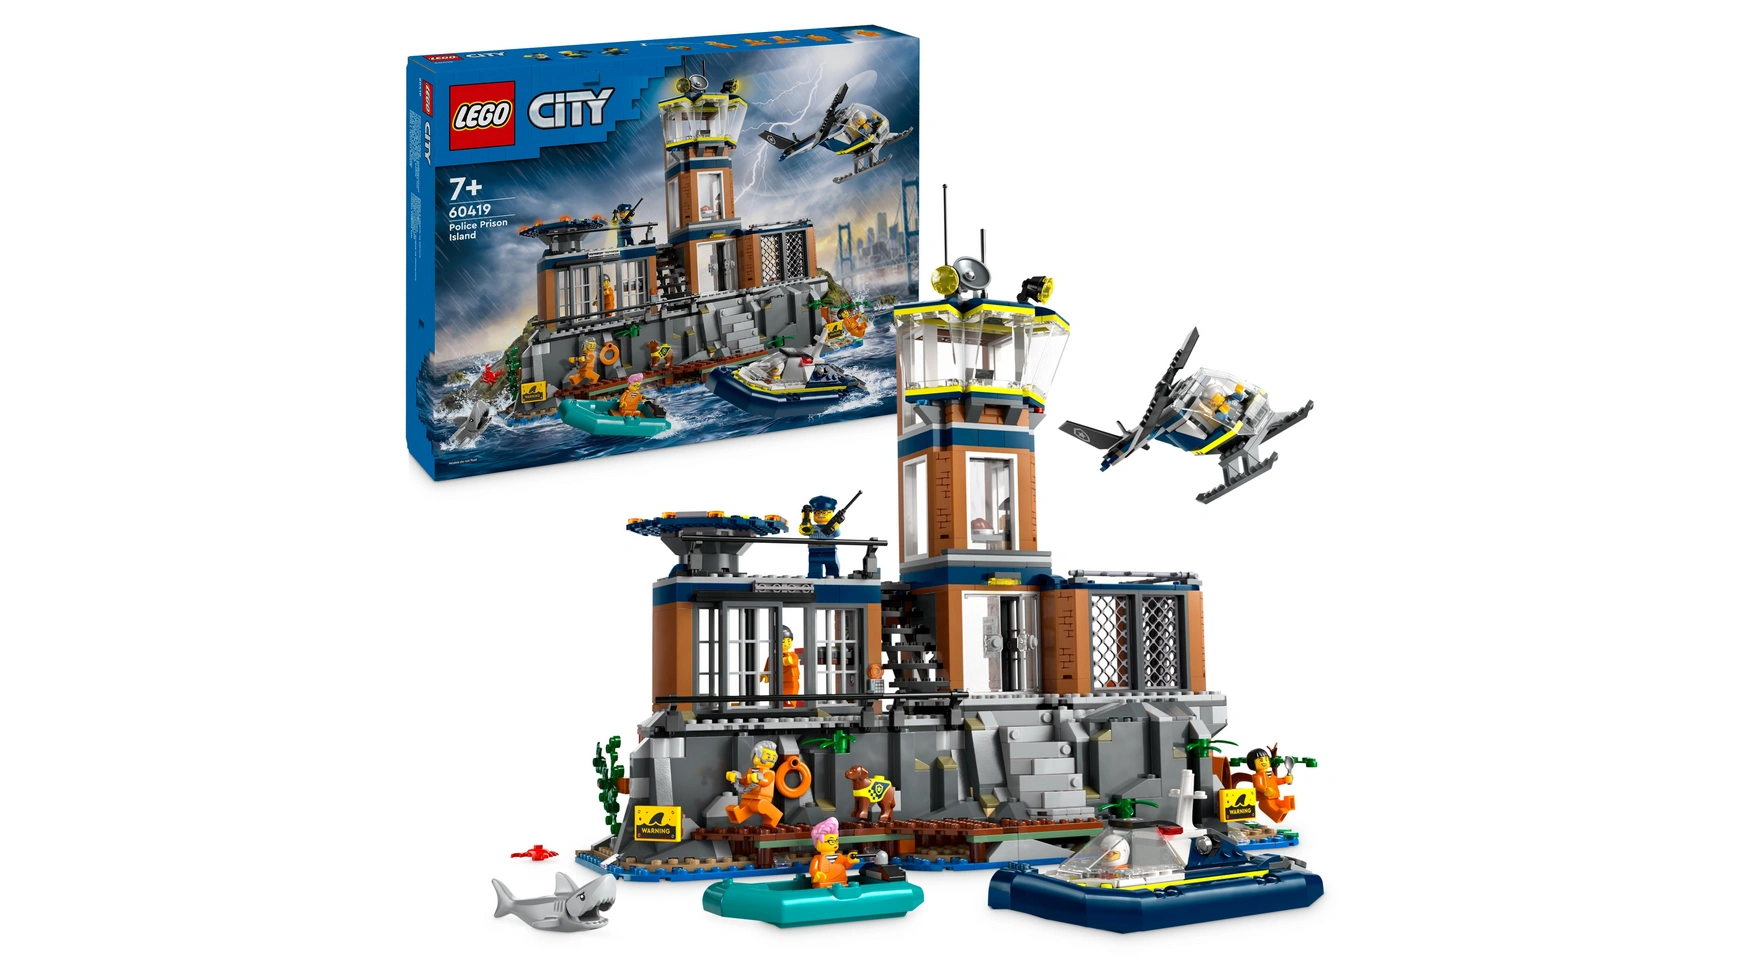 lego city погоня на полицейской машине и игрушечный автомобиль с мускулистыми машинами Lego City Игрушка полицейского участка острова-тюрьмы